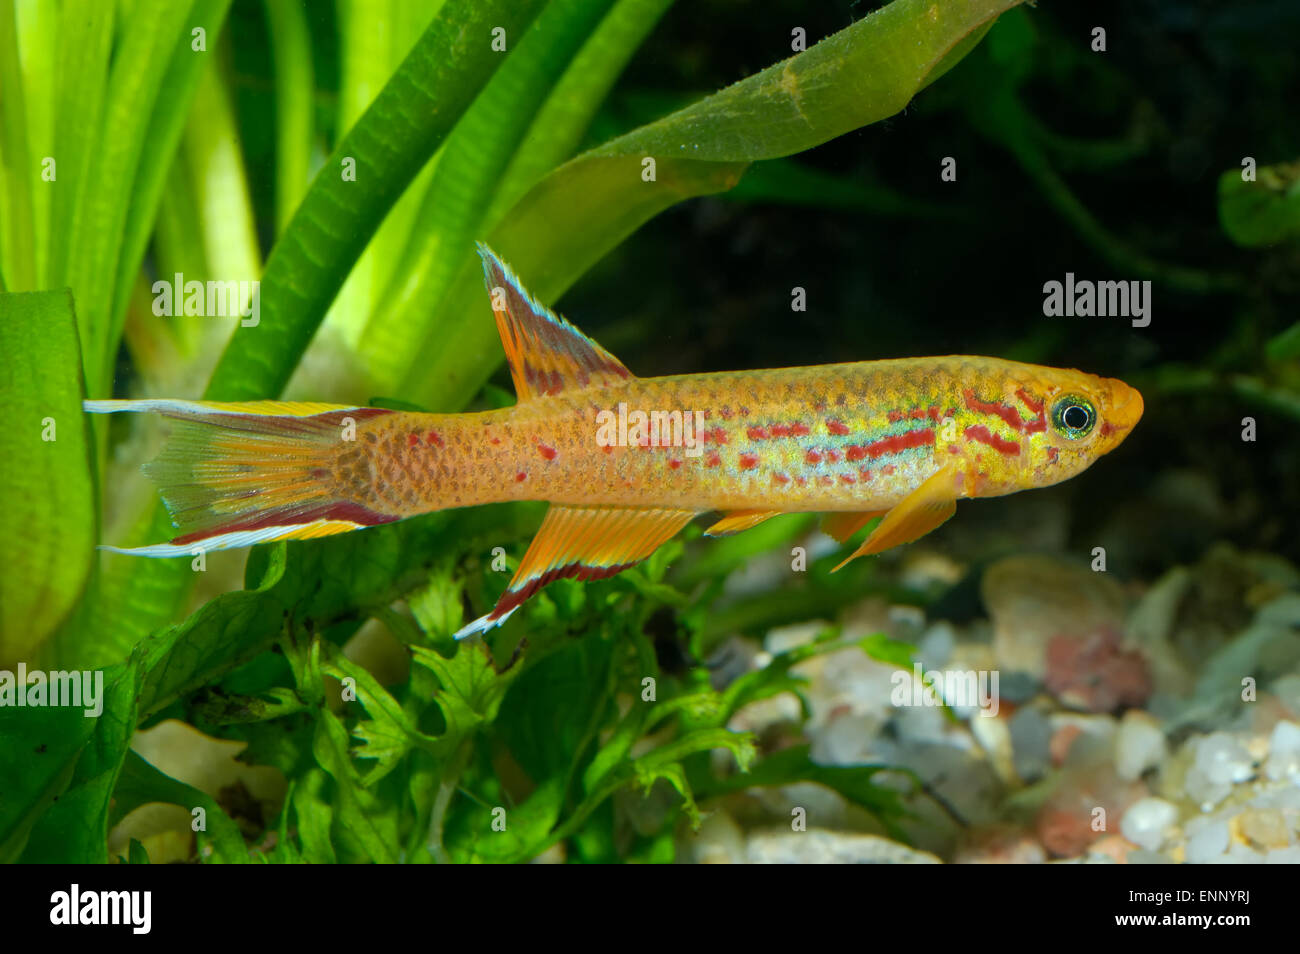 Aquarium fish from genus Aphyosemion. Stock Photo